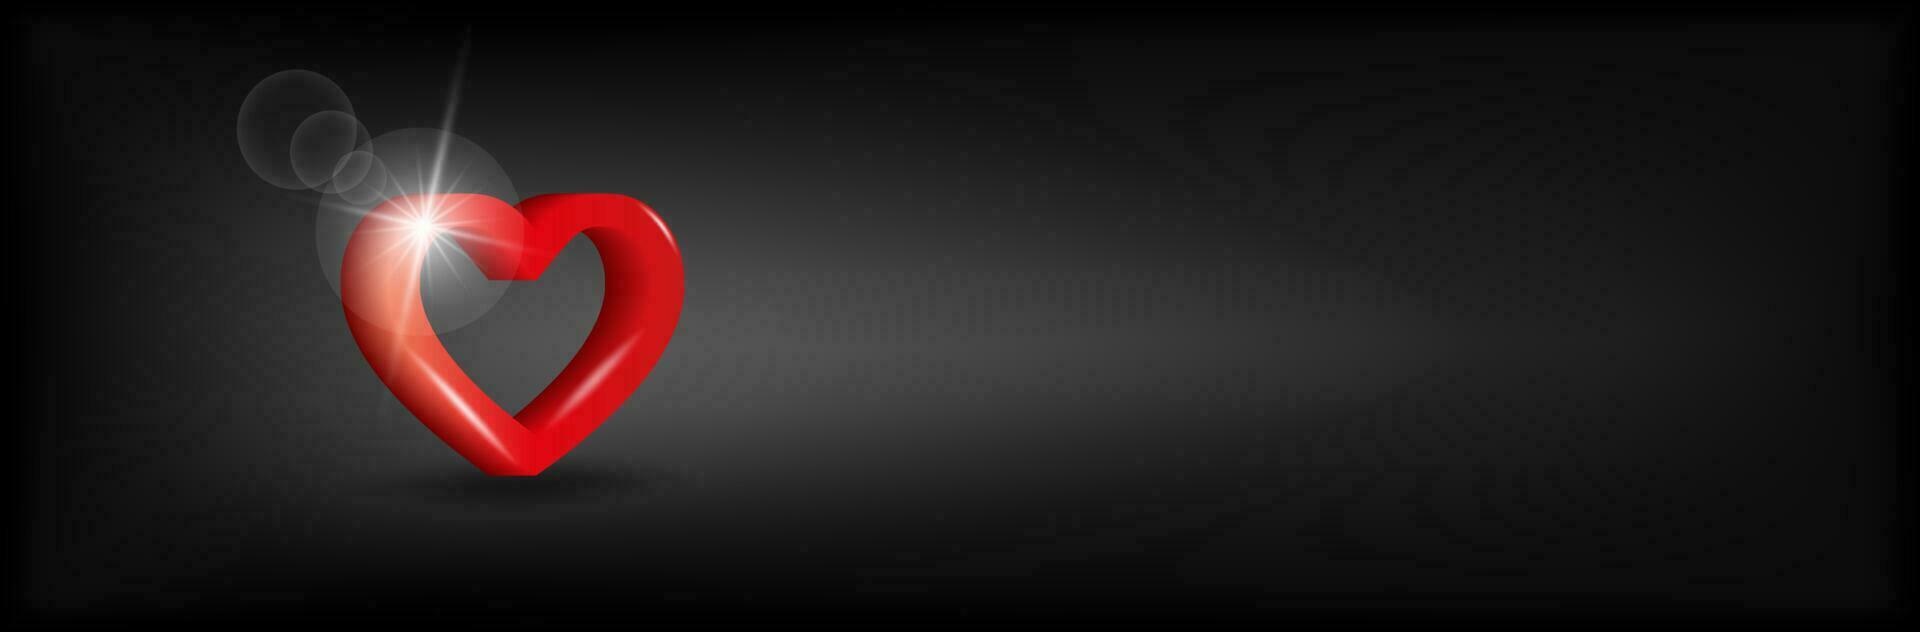 volumetriska hjärta ikon på en svart bakgrund. 3d vektor illustration